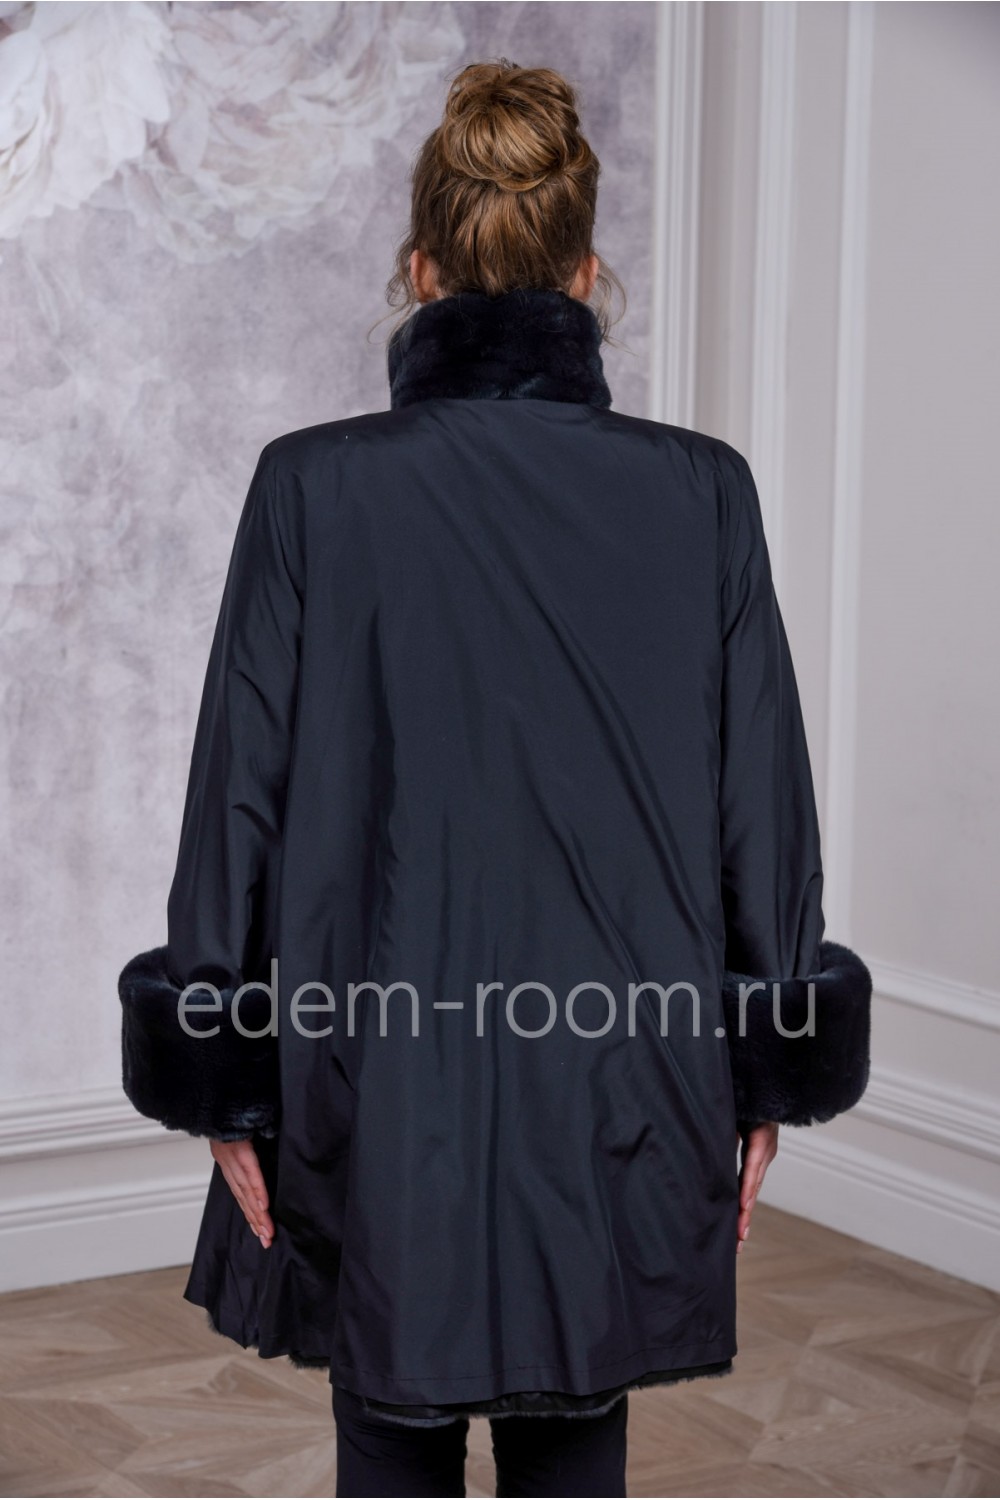 Женское меховое пальто на большие размеры